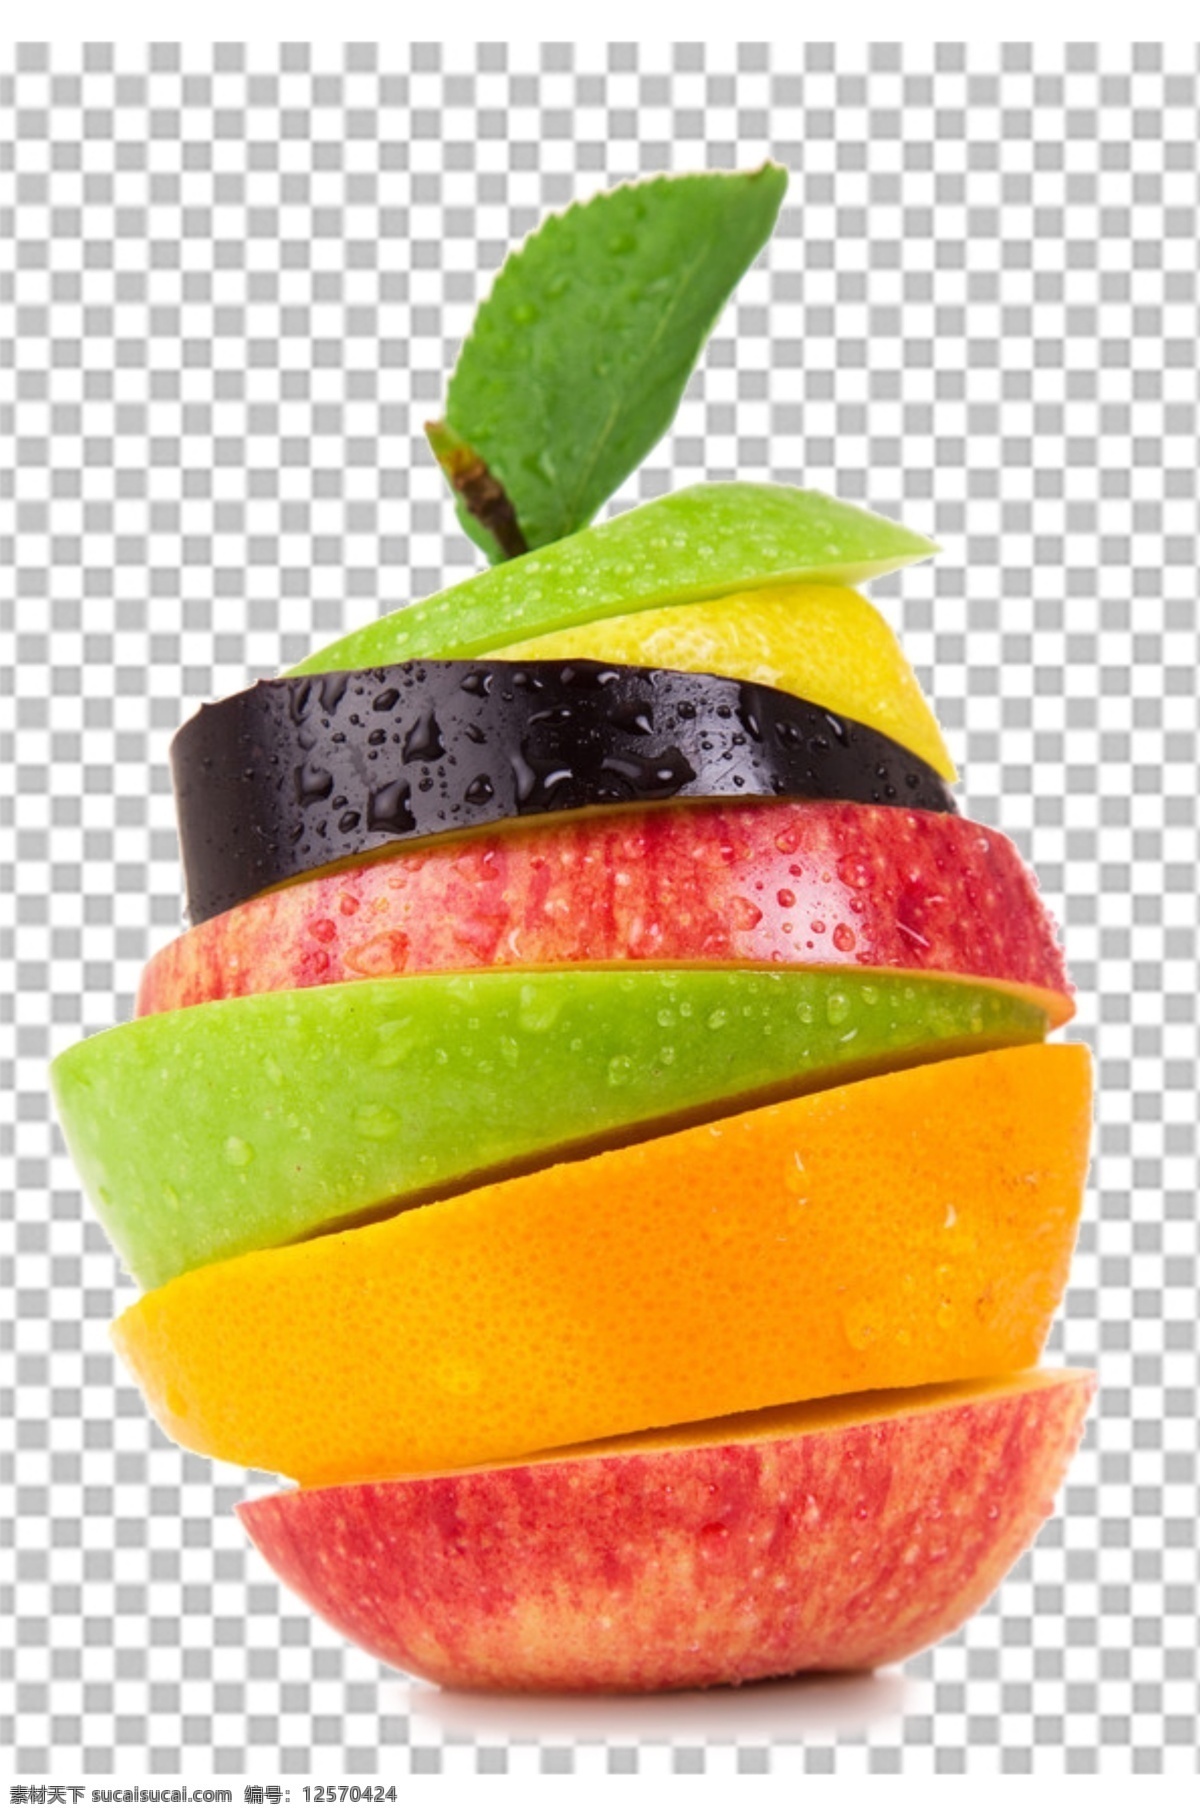 水果写真图片 水果汉堡 水果特写 水果写真 透明底水果 免抠图 水果 分层图 通道 分层 新鲜 特写 透明背景 透明底 抠图 png图 生物世界 水果透明底